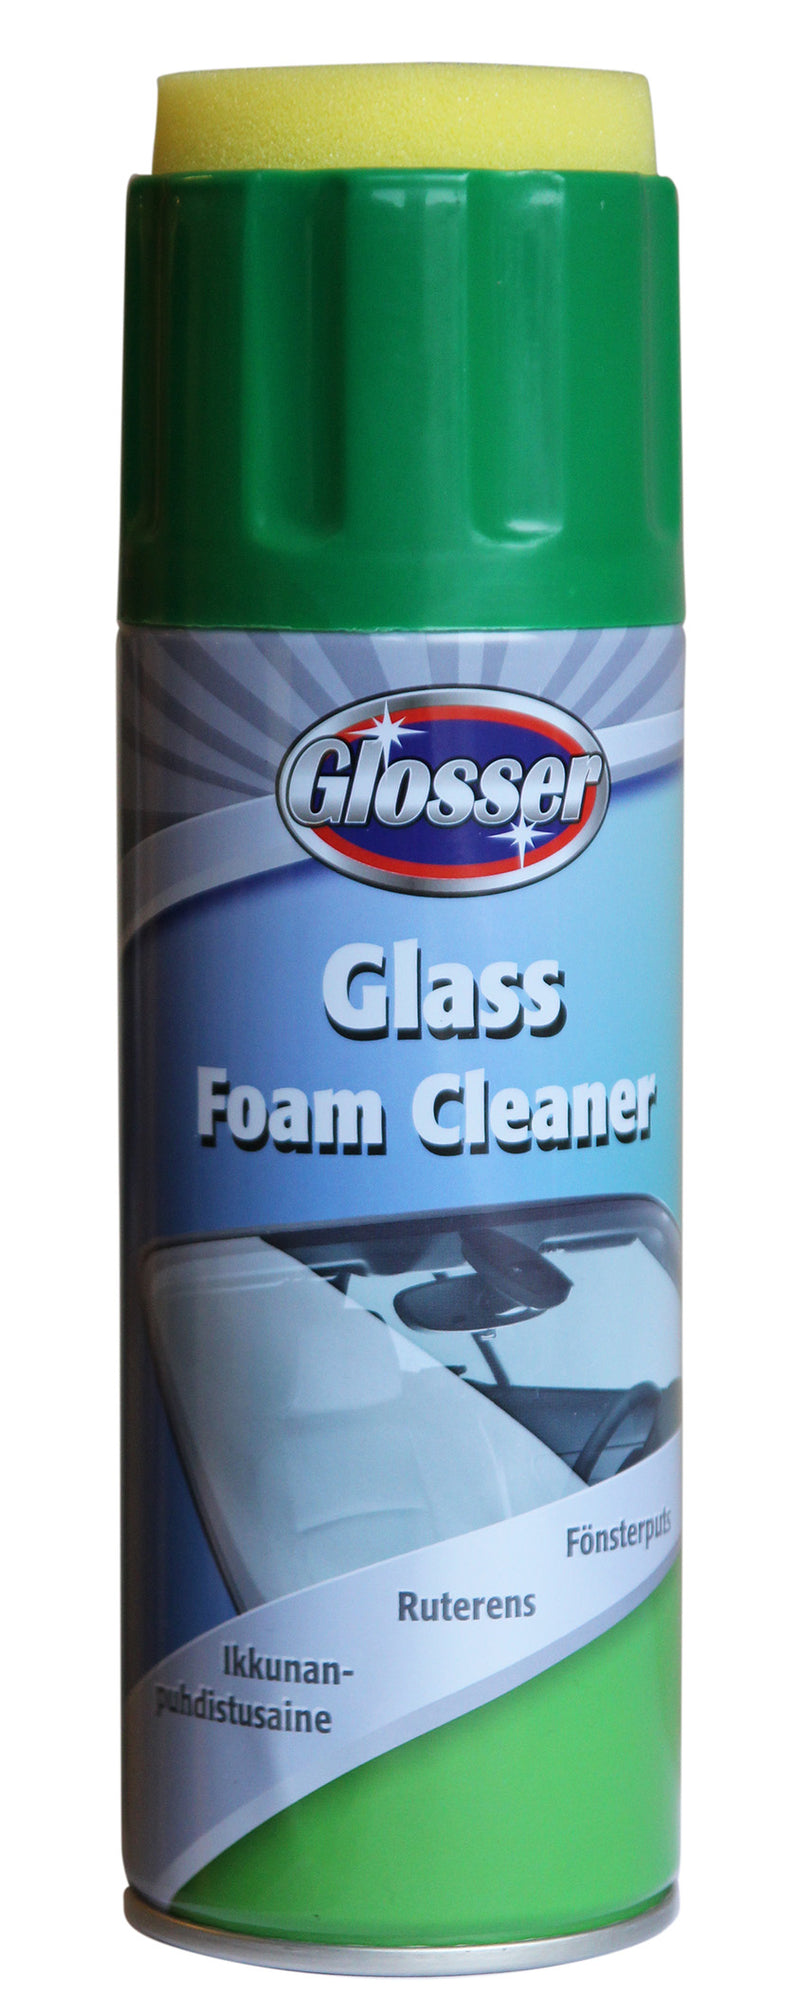 Glosser Foamcleaner Glass 450ml.